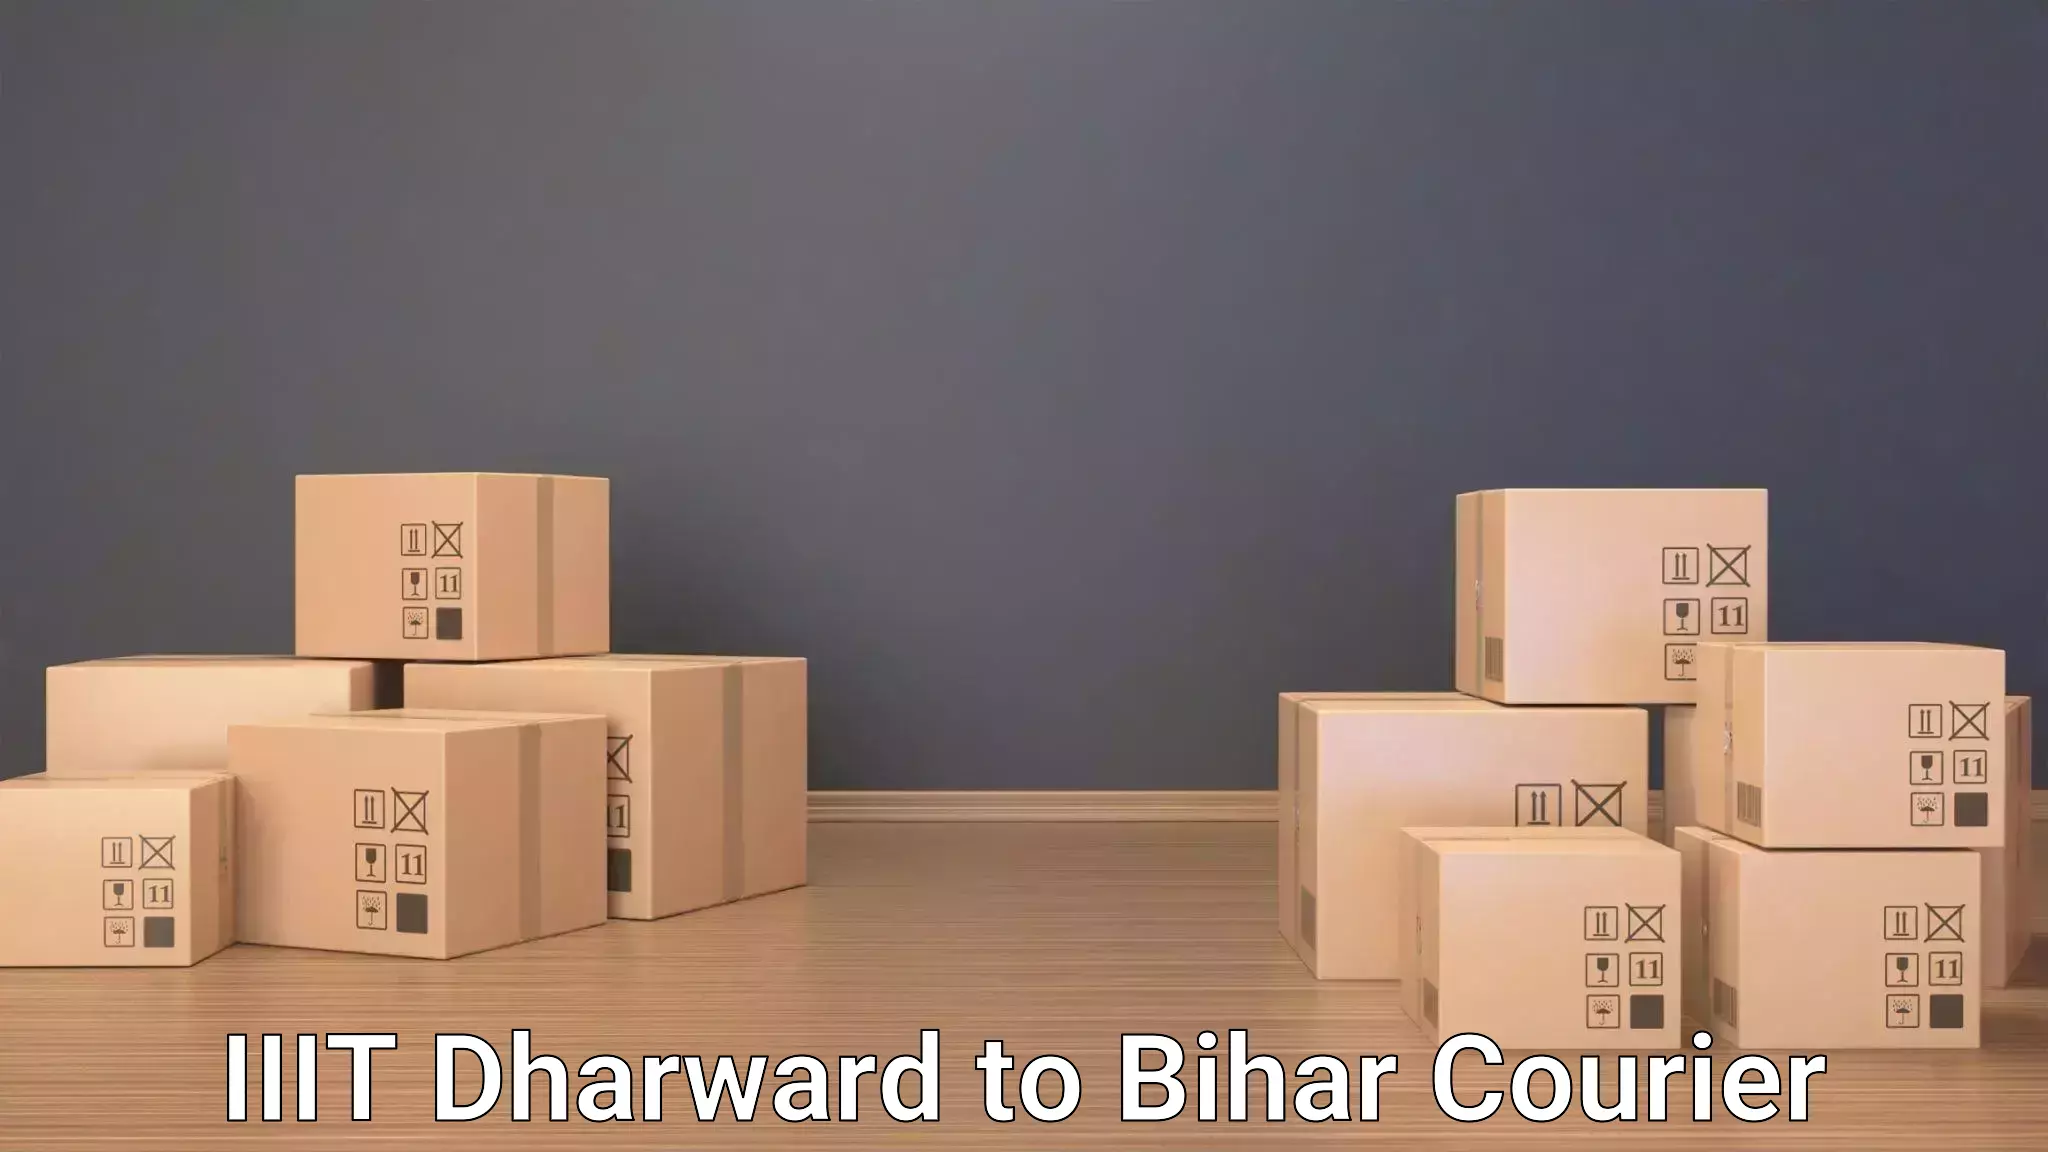 Holiday season luggage delivery IIIT Dharward to Vaishali